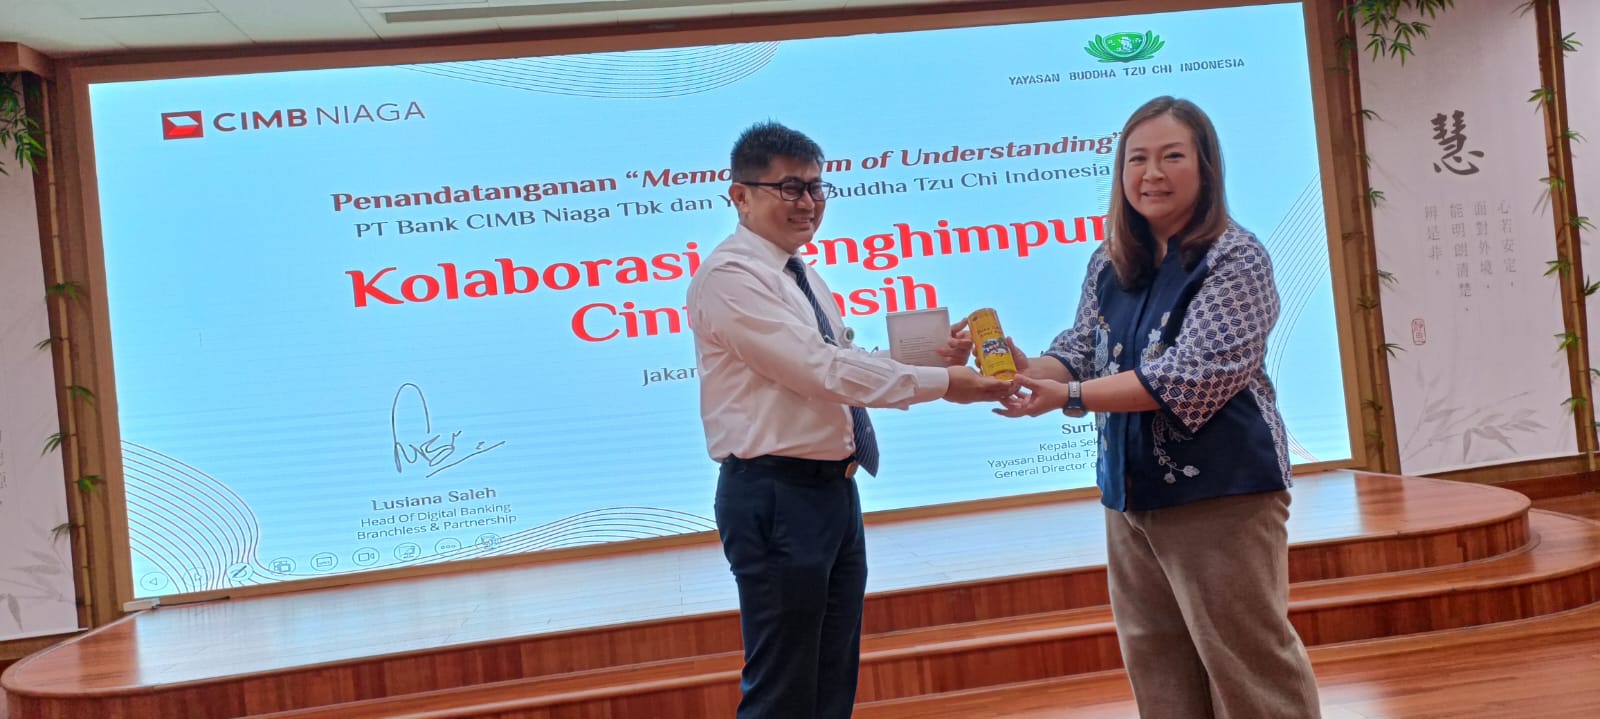 Kolaborasi CIMB Niaga-Yayasan Buddha Tzu Chi Indonesia Permudah Donasi